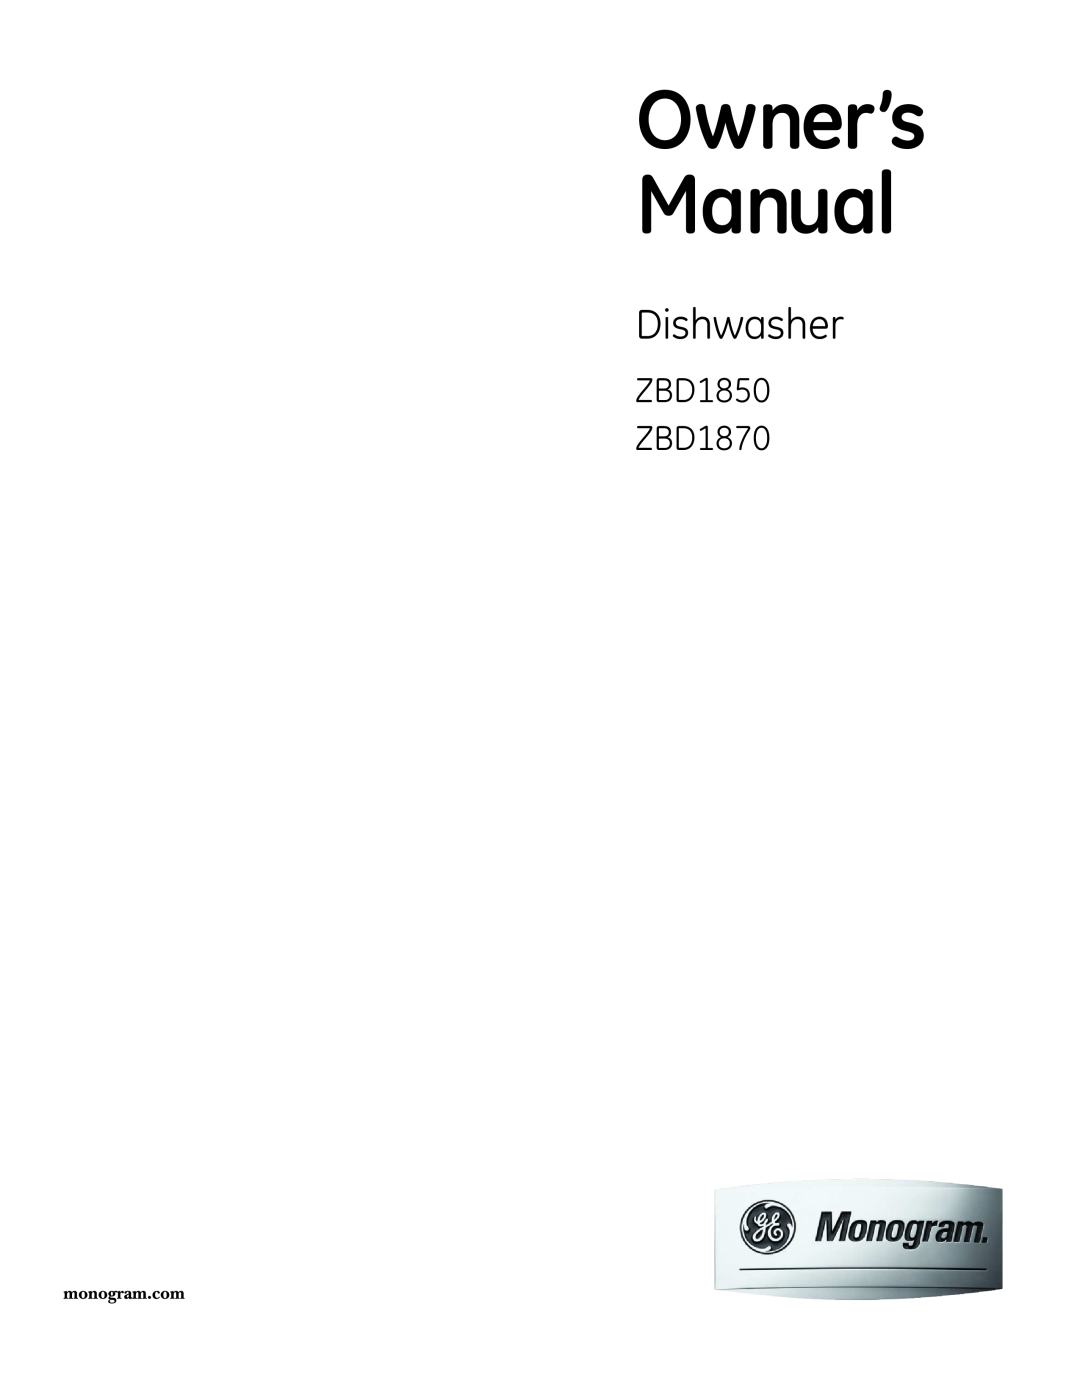 GE owner manual Dishwasher, ZBD1850 ZBD1870 